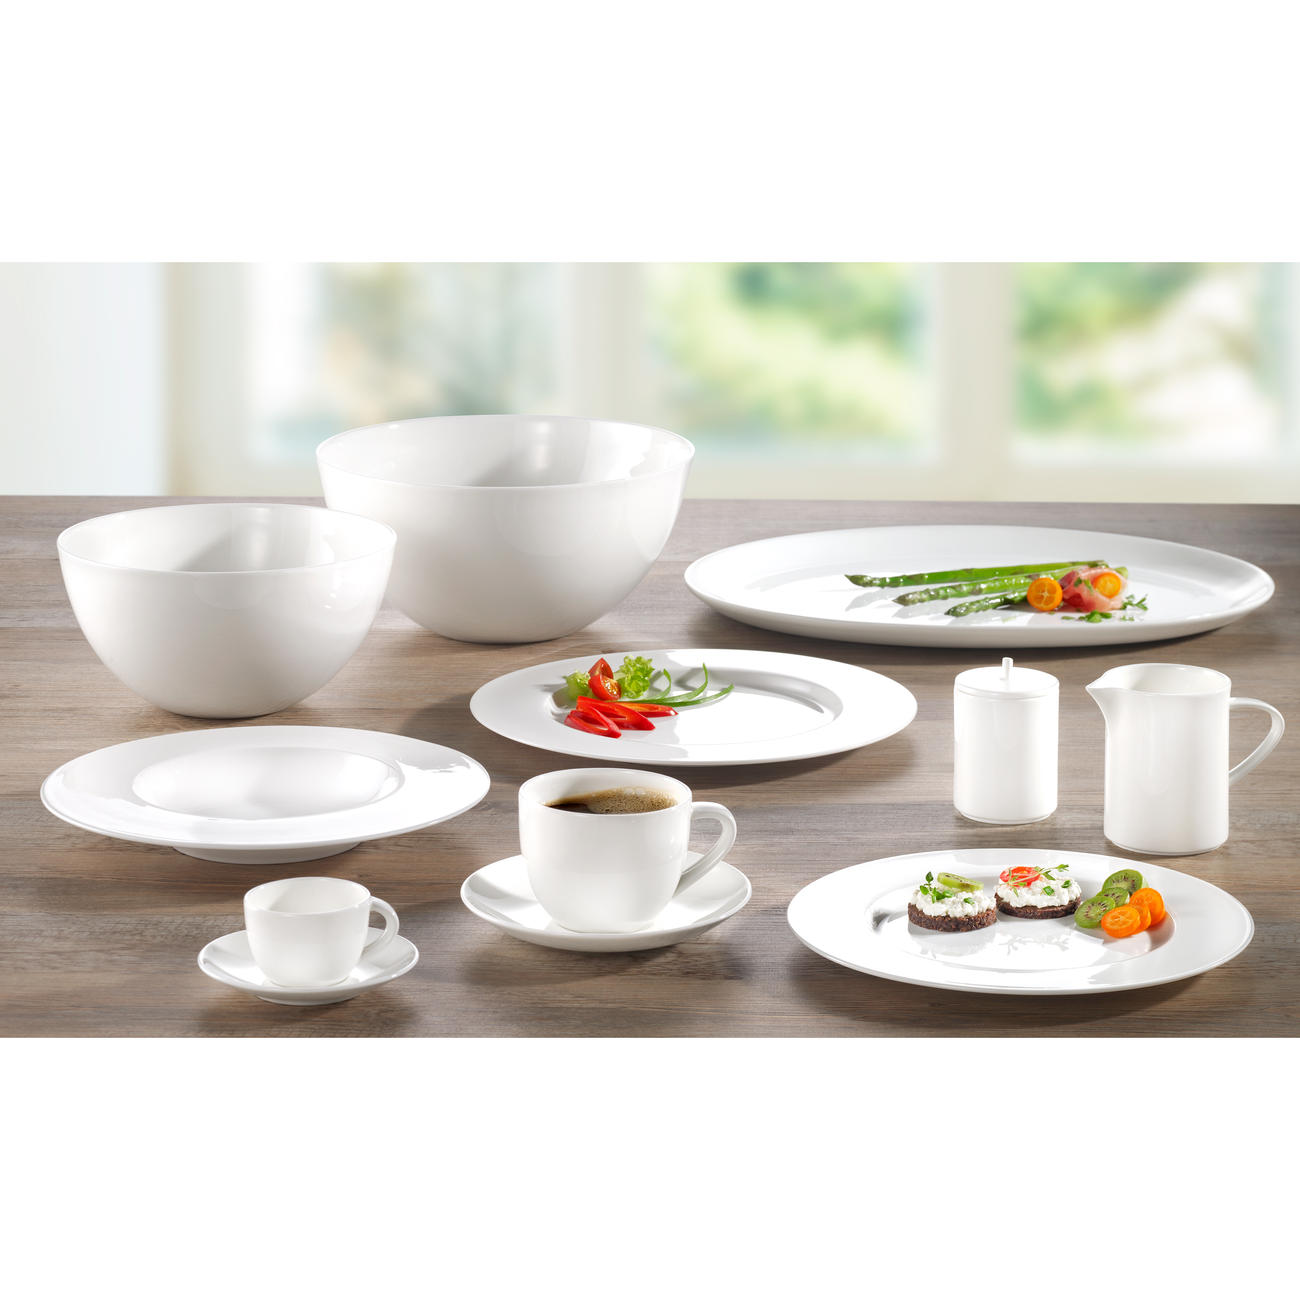 Xiao-bowl3 Bol de thé en relief de style japonais créatif couverts Set de table Vaisselle Une tasse de thé bol de calibre 6 cm